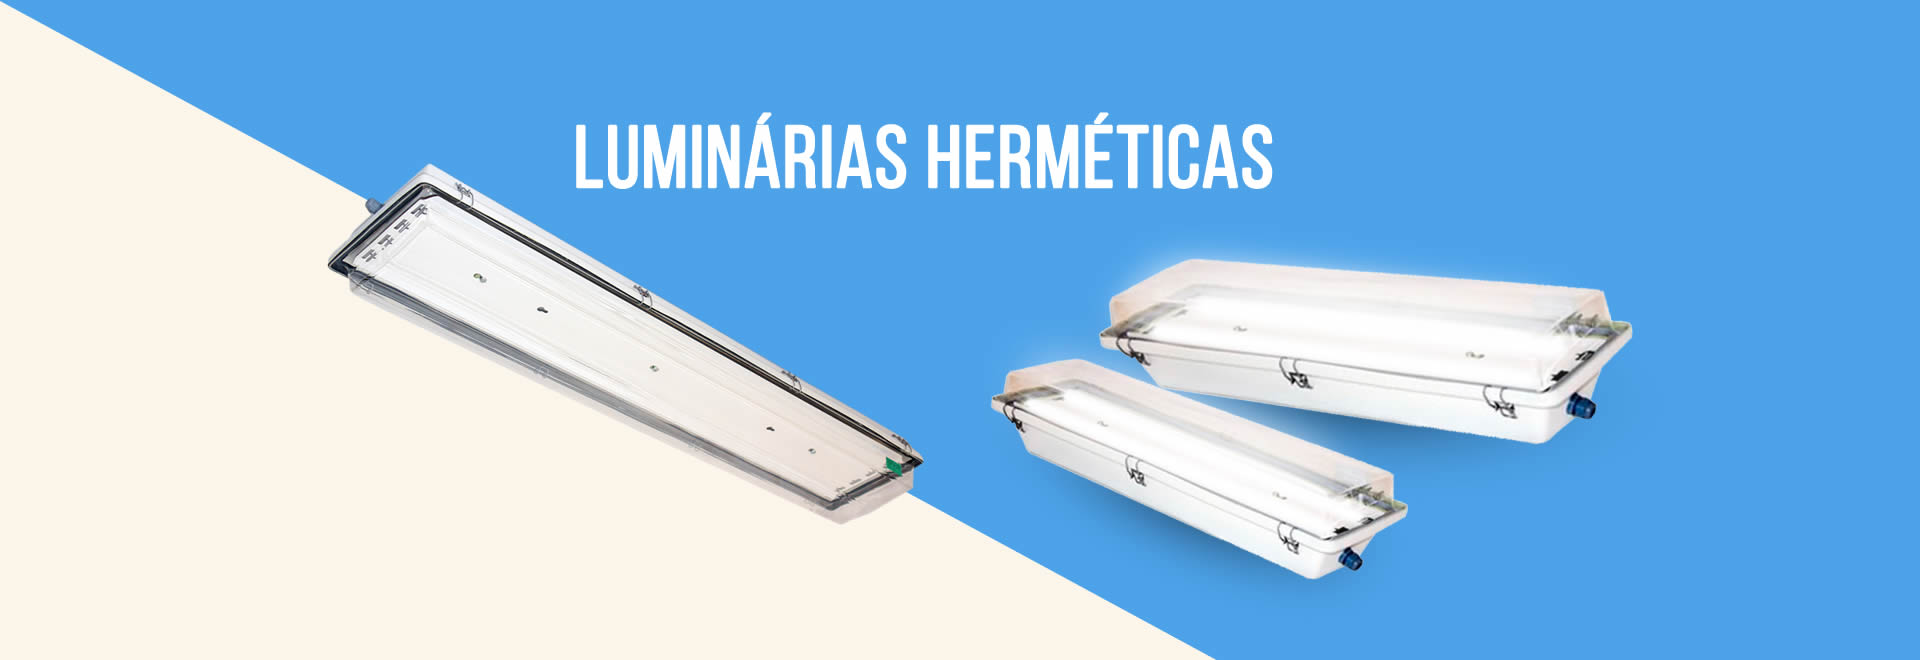 http://www.ssluminarias.com.br/wp-content/uploads/2019/01/luminarias-memetricas-ss-luminarias-2.jpg